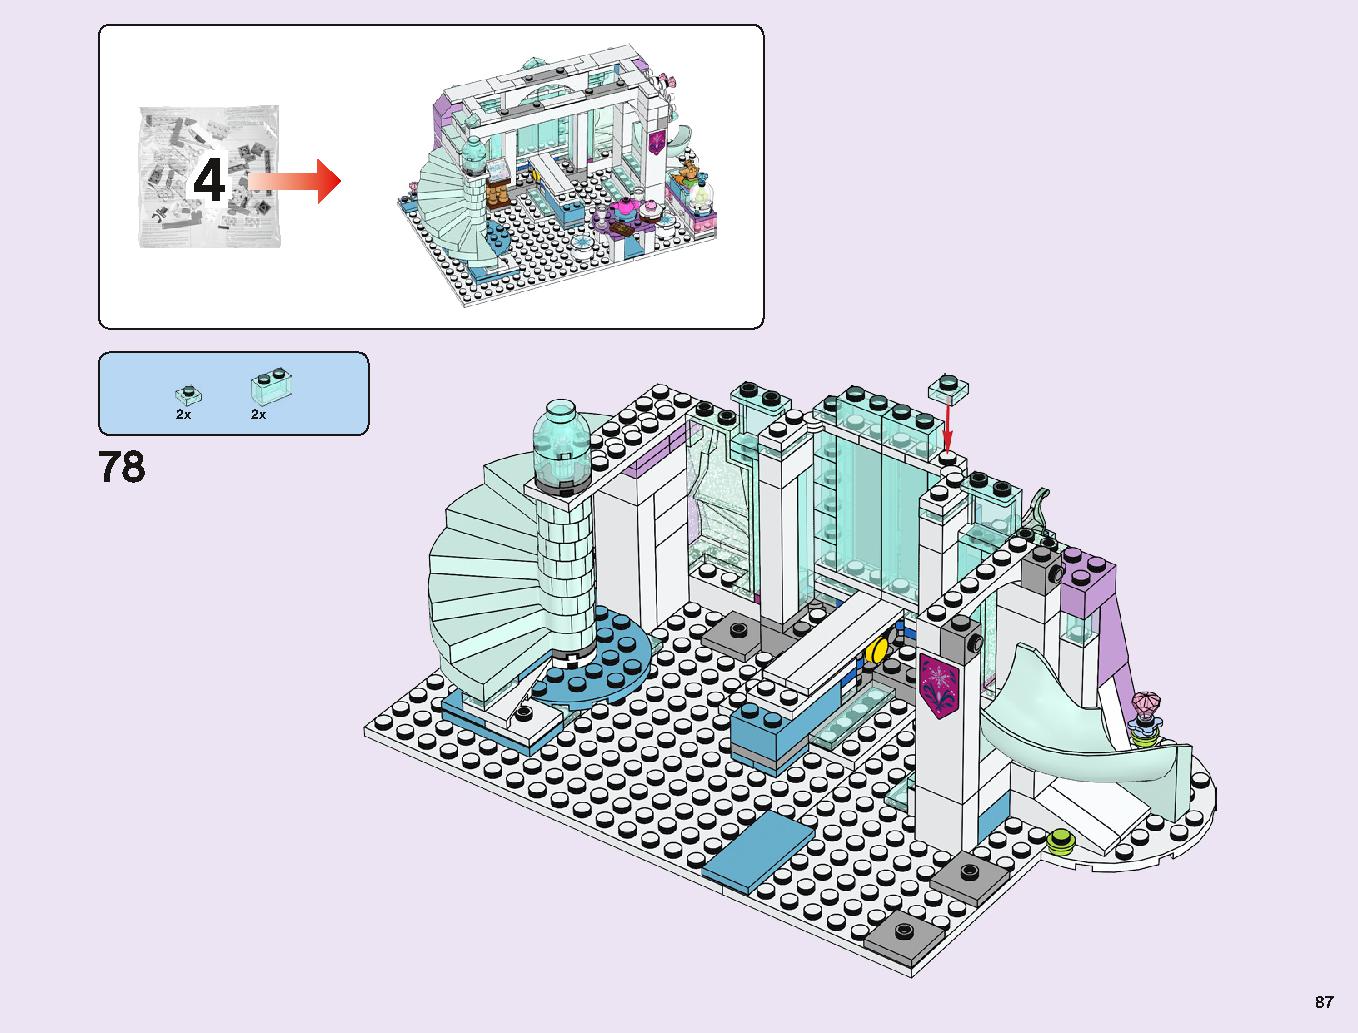 アナと雪の女王 “アイスキャッスル・ファンタジー” 43172 レゴの商品情報 レゴの説明書・組立方法 87 page